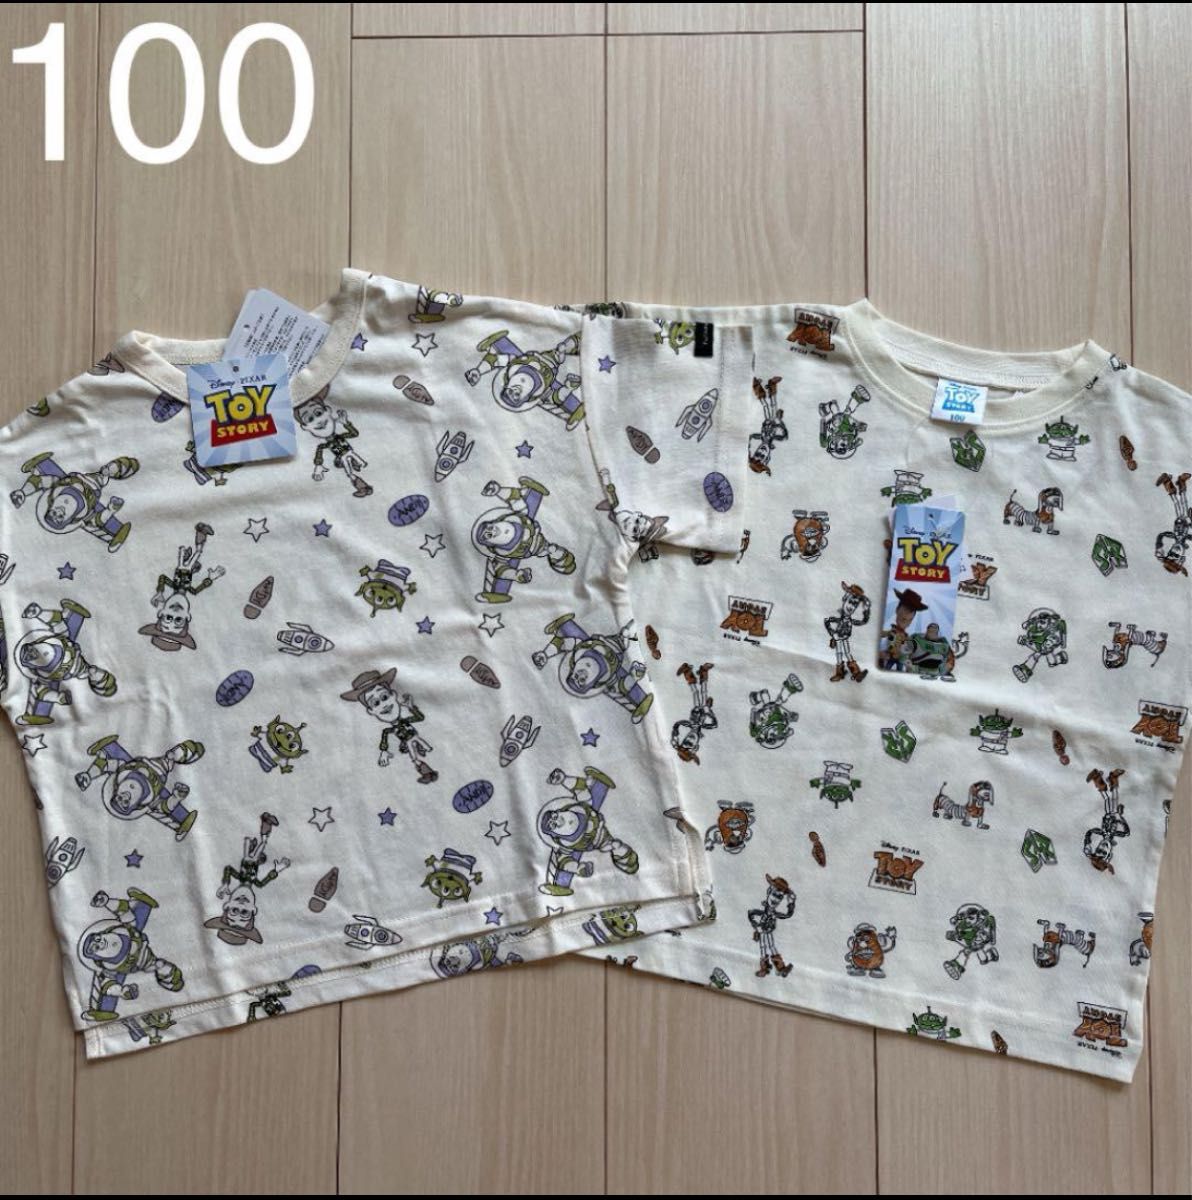 【Disney】ディズニー トイストーリー 総柄 Tシャツ 2点セット 100 ウッディー バズ ポテトヘッド キャラクター